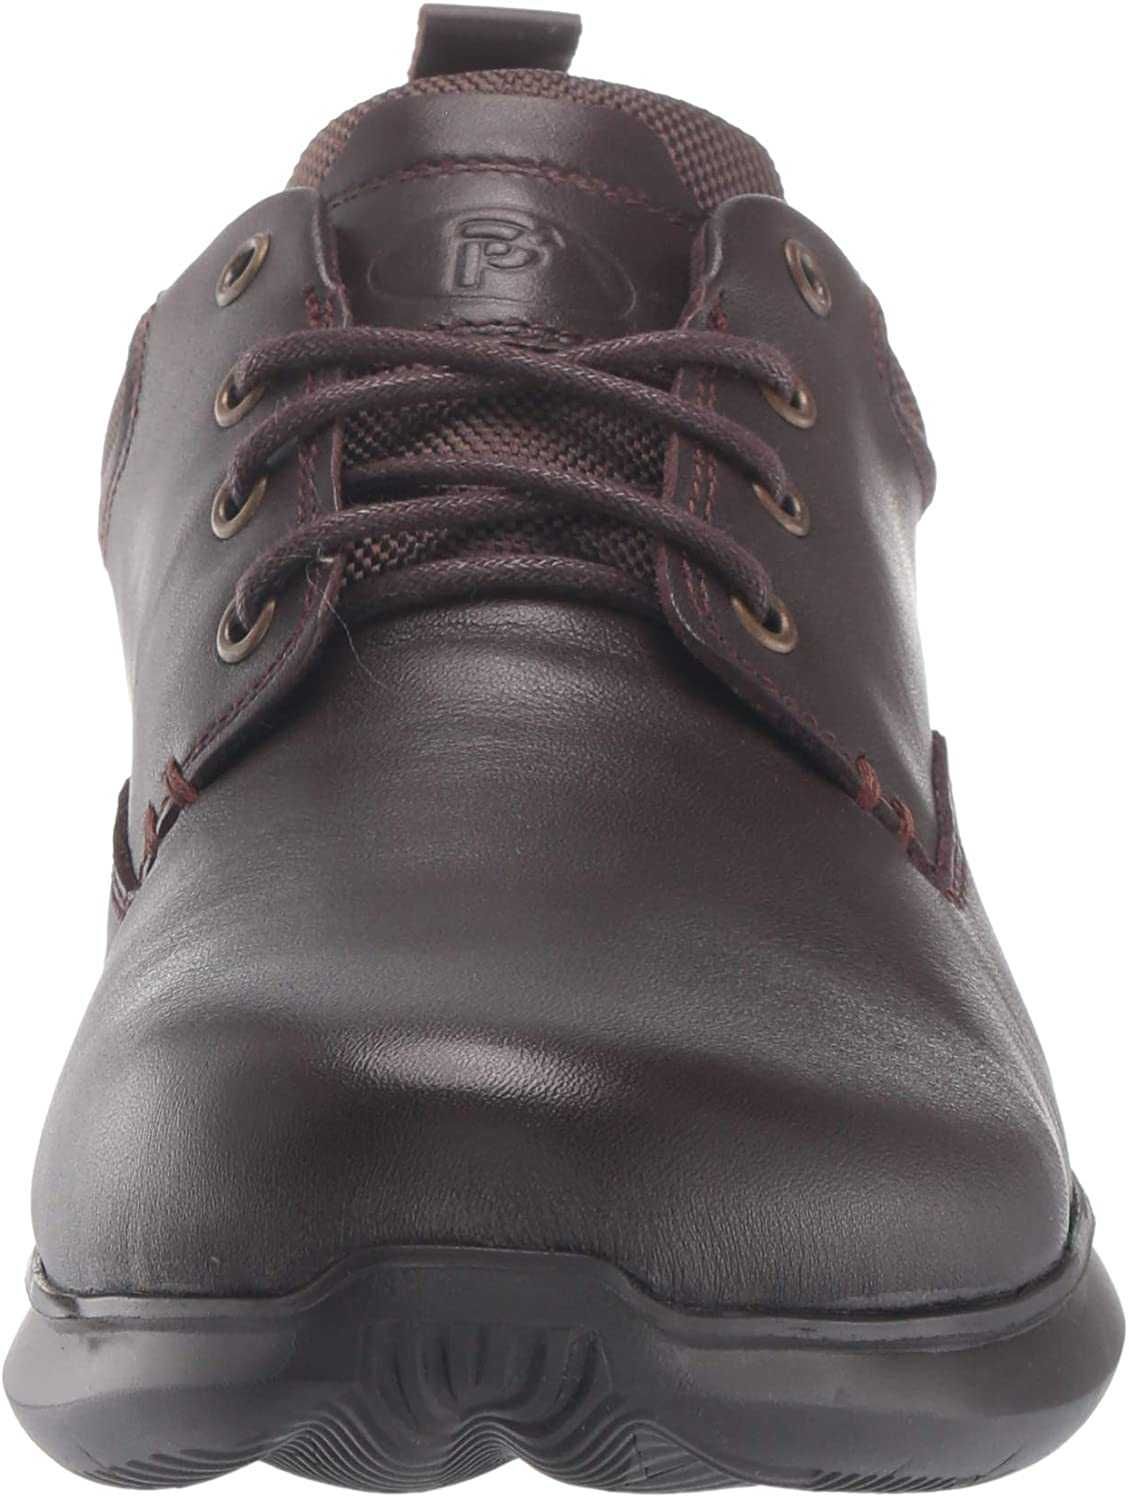 shoesmart.com.ua Propét Туфли кожаные большой размер 48 47  31 см